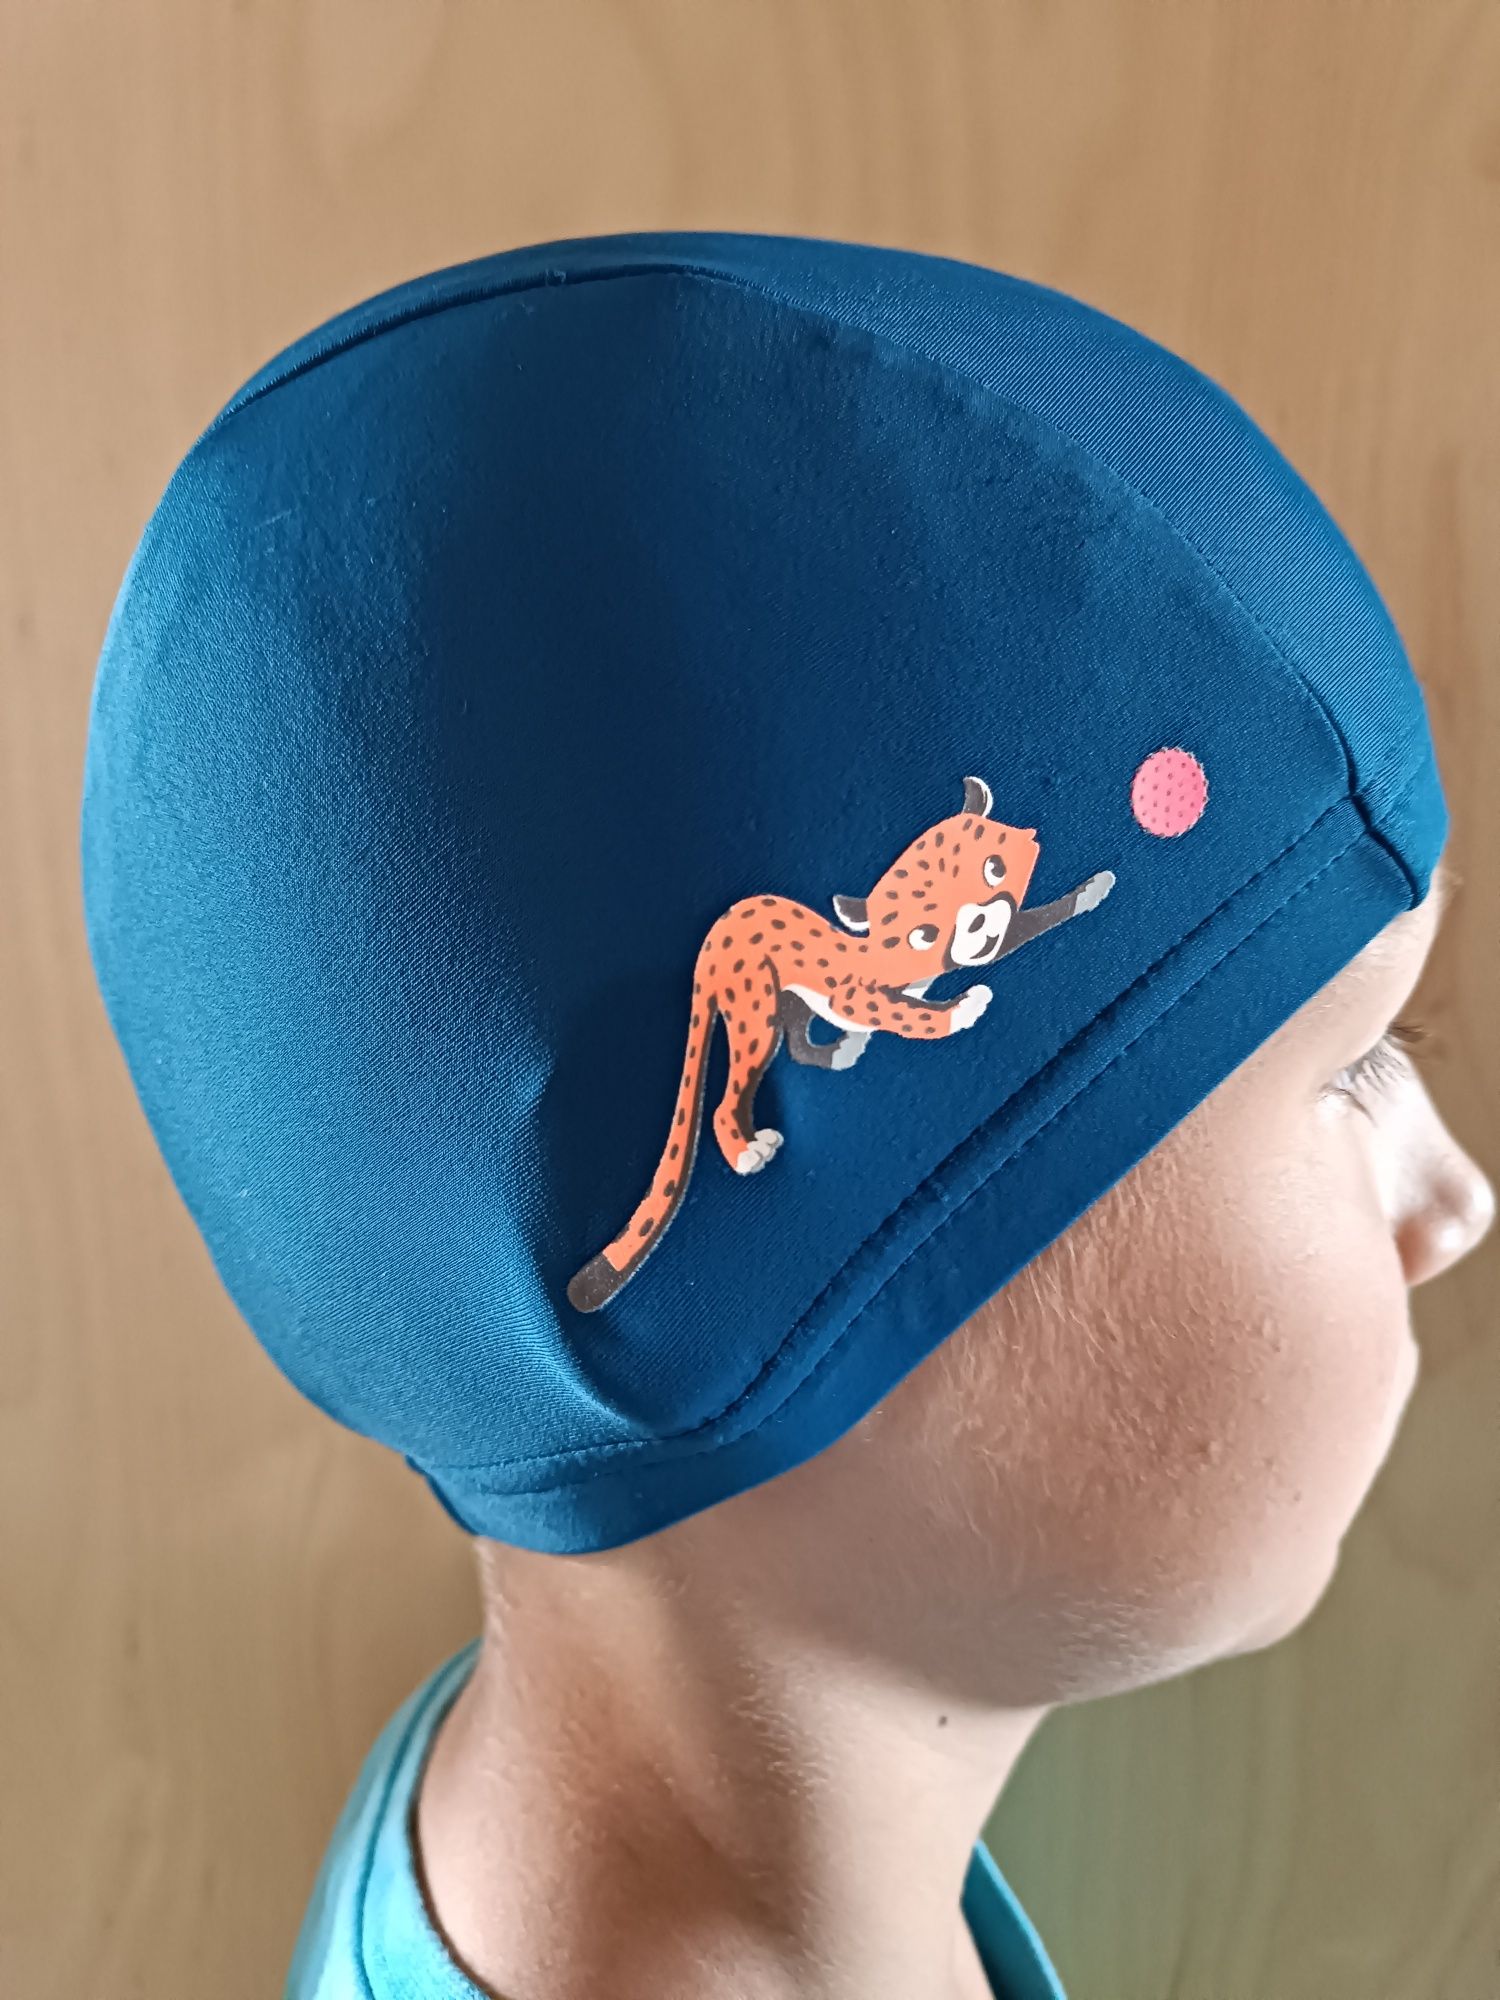 Дитяча шапочка для плавання басейну NABAIJI тканинна